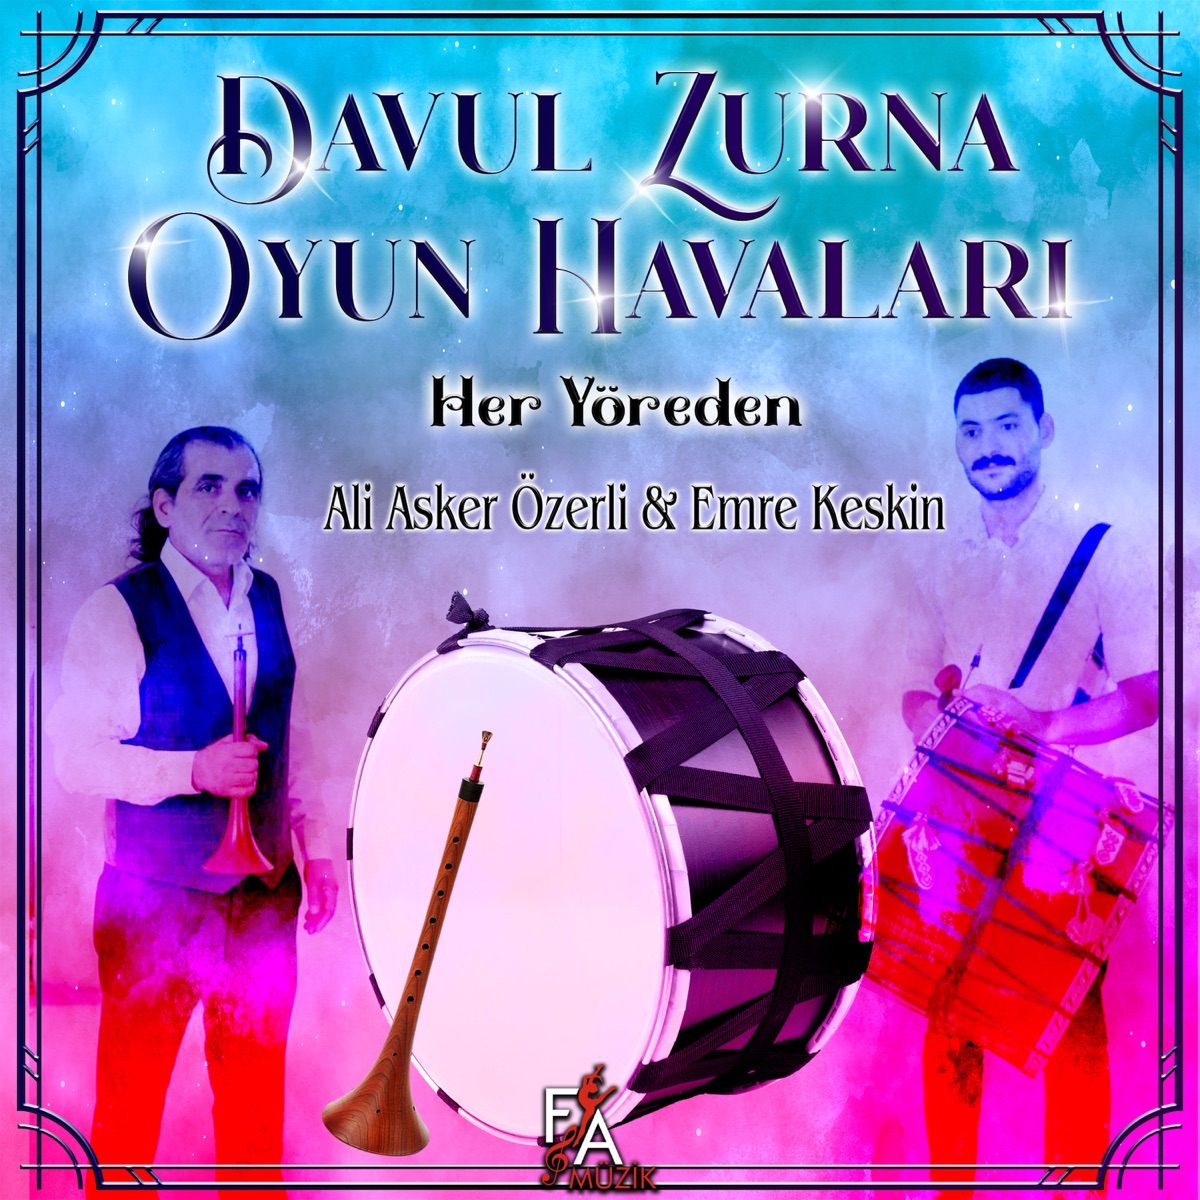 Davul Zurna Oyun Havaları Her Yöreden - Album by Ali Asker Özerli & Emre  Keskin - Apple Music